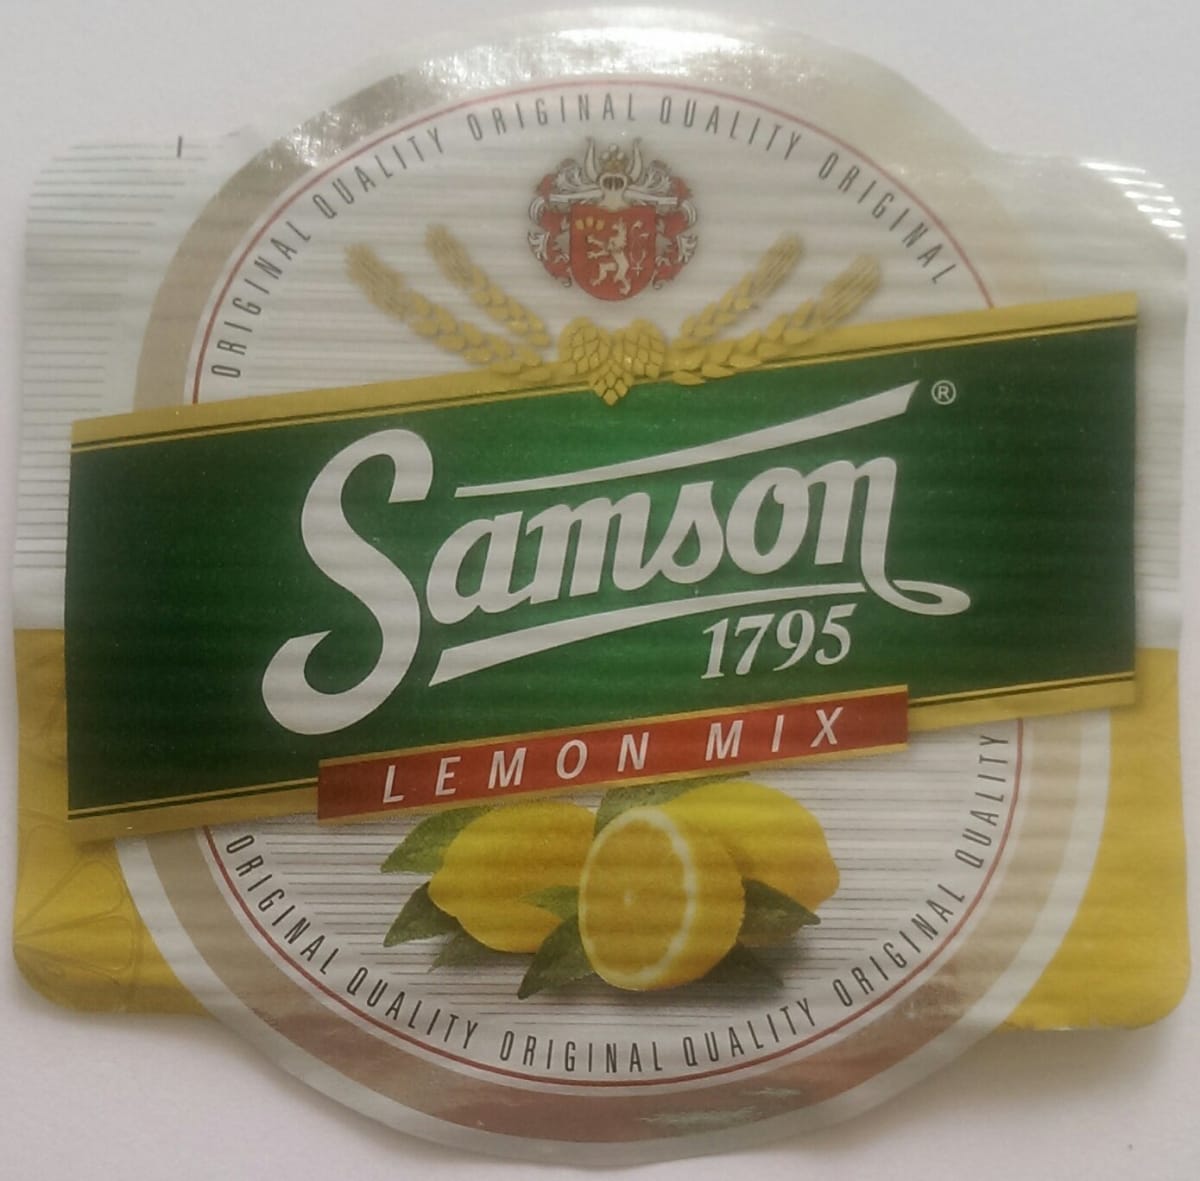 Samson Lemon Mix